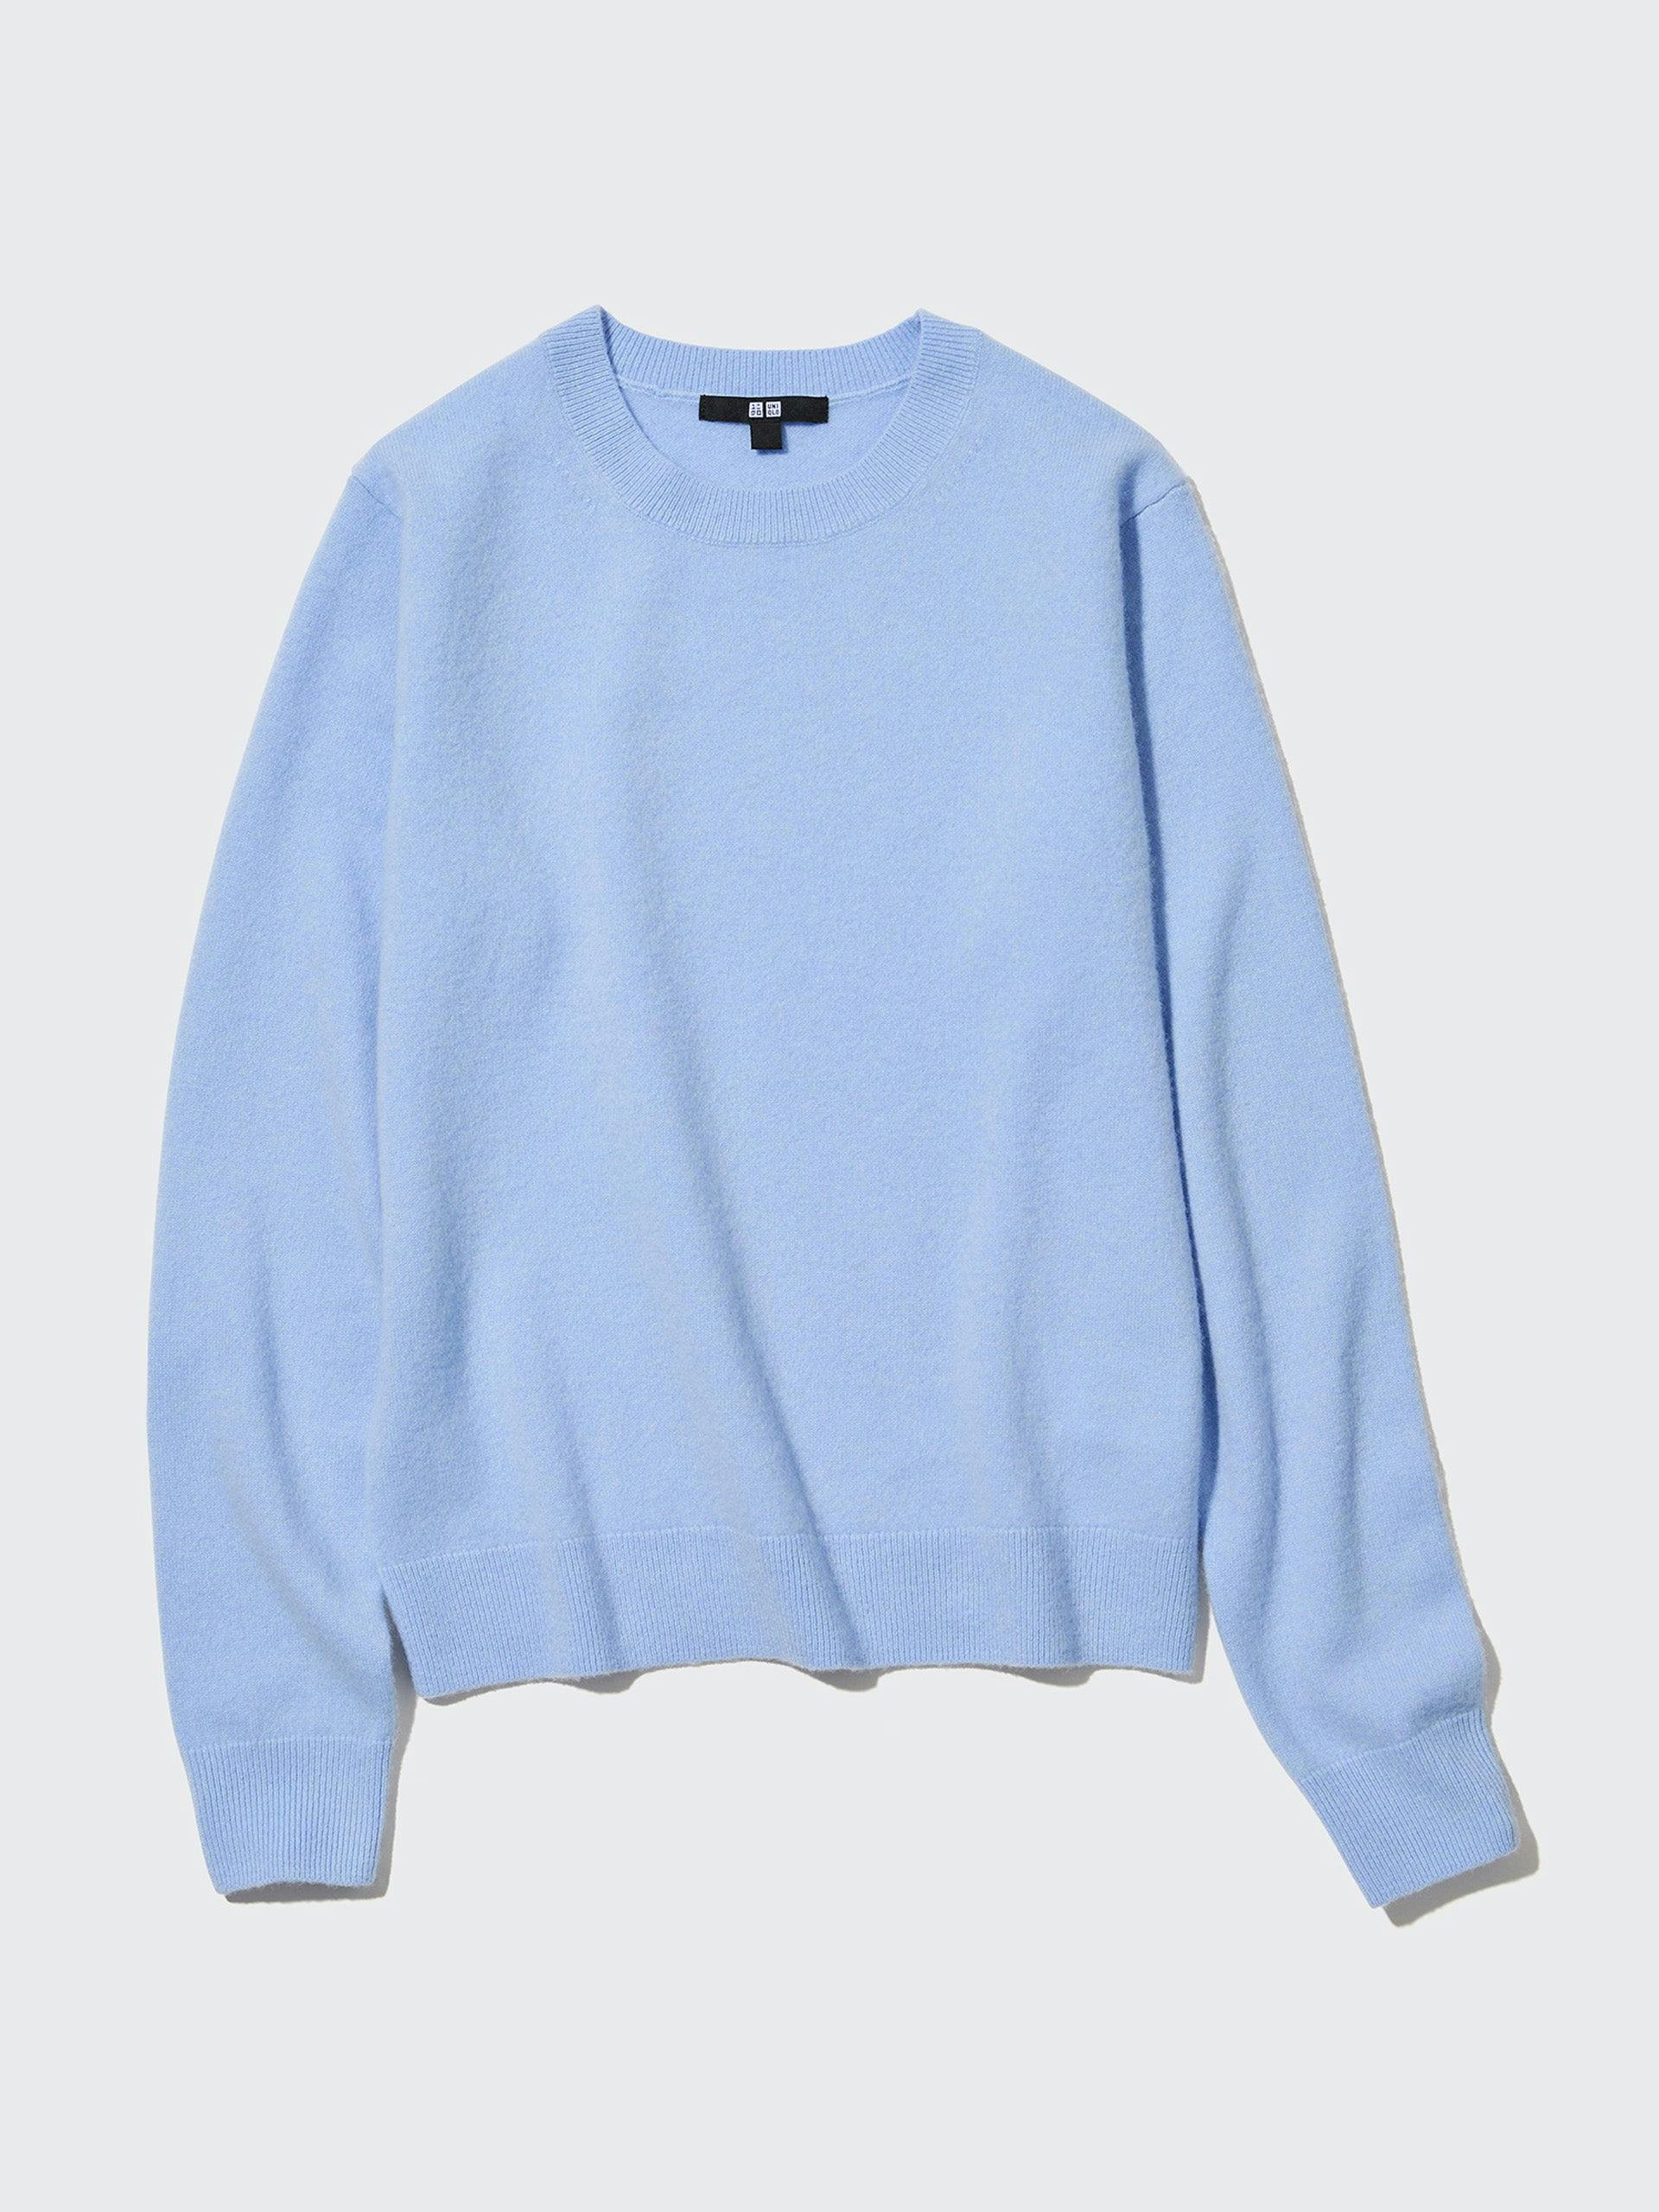 Cashmere jumper in pale blue